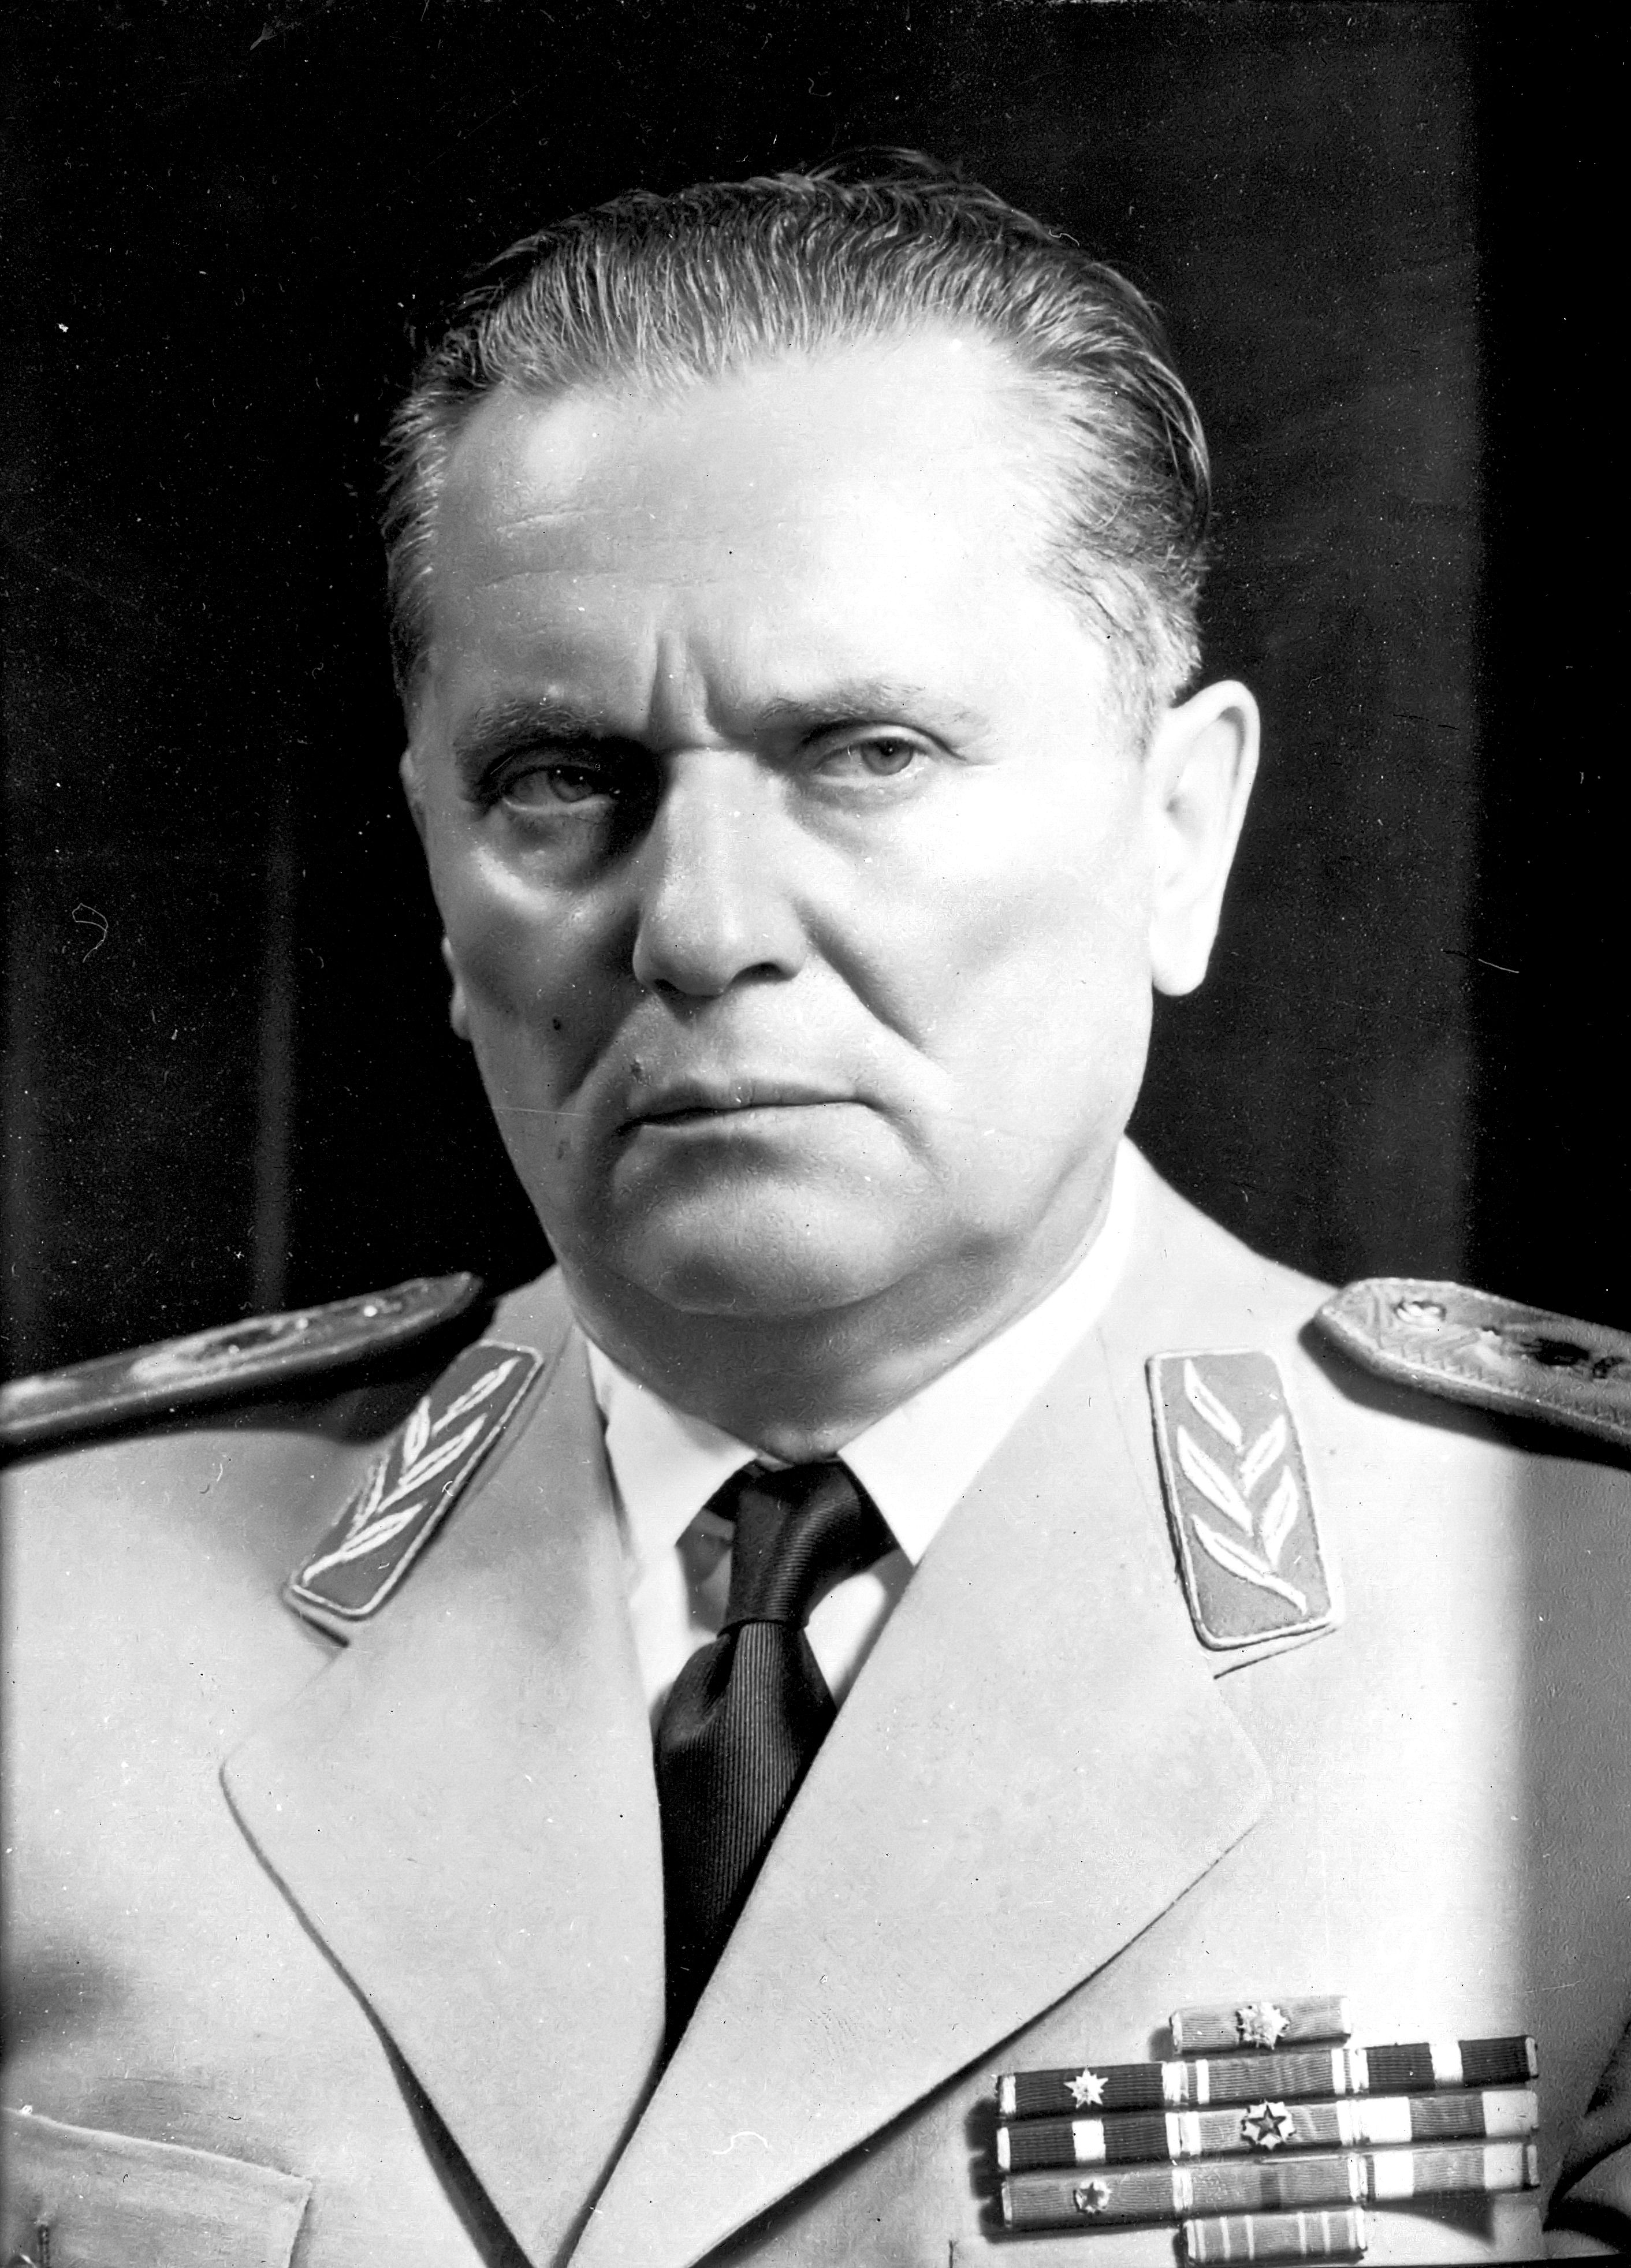 Josip Broz Tito uniform portrait